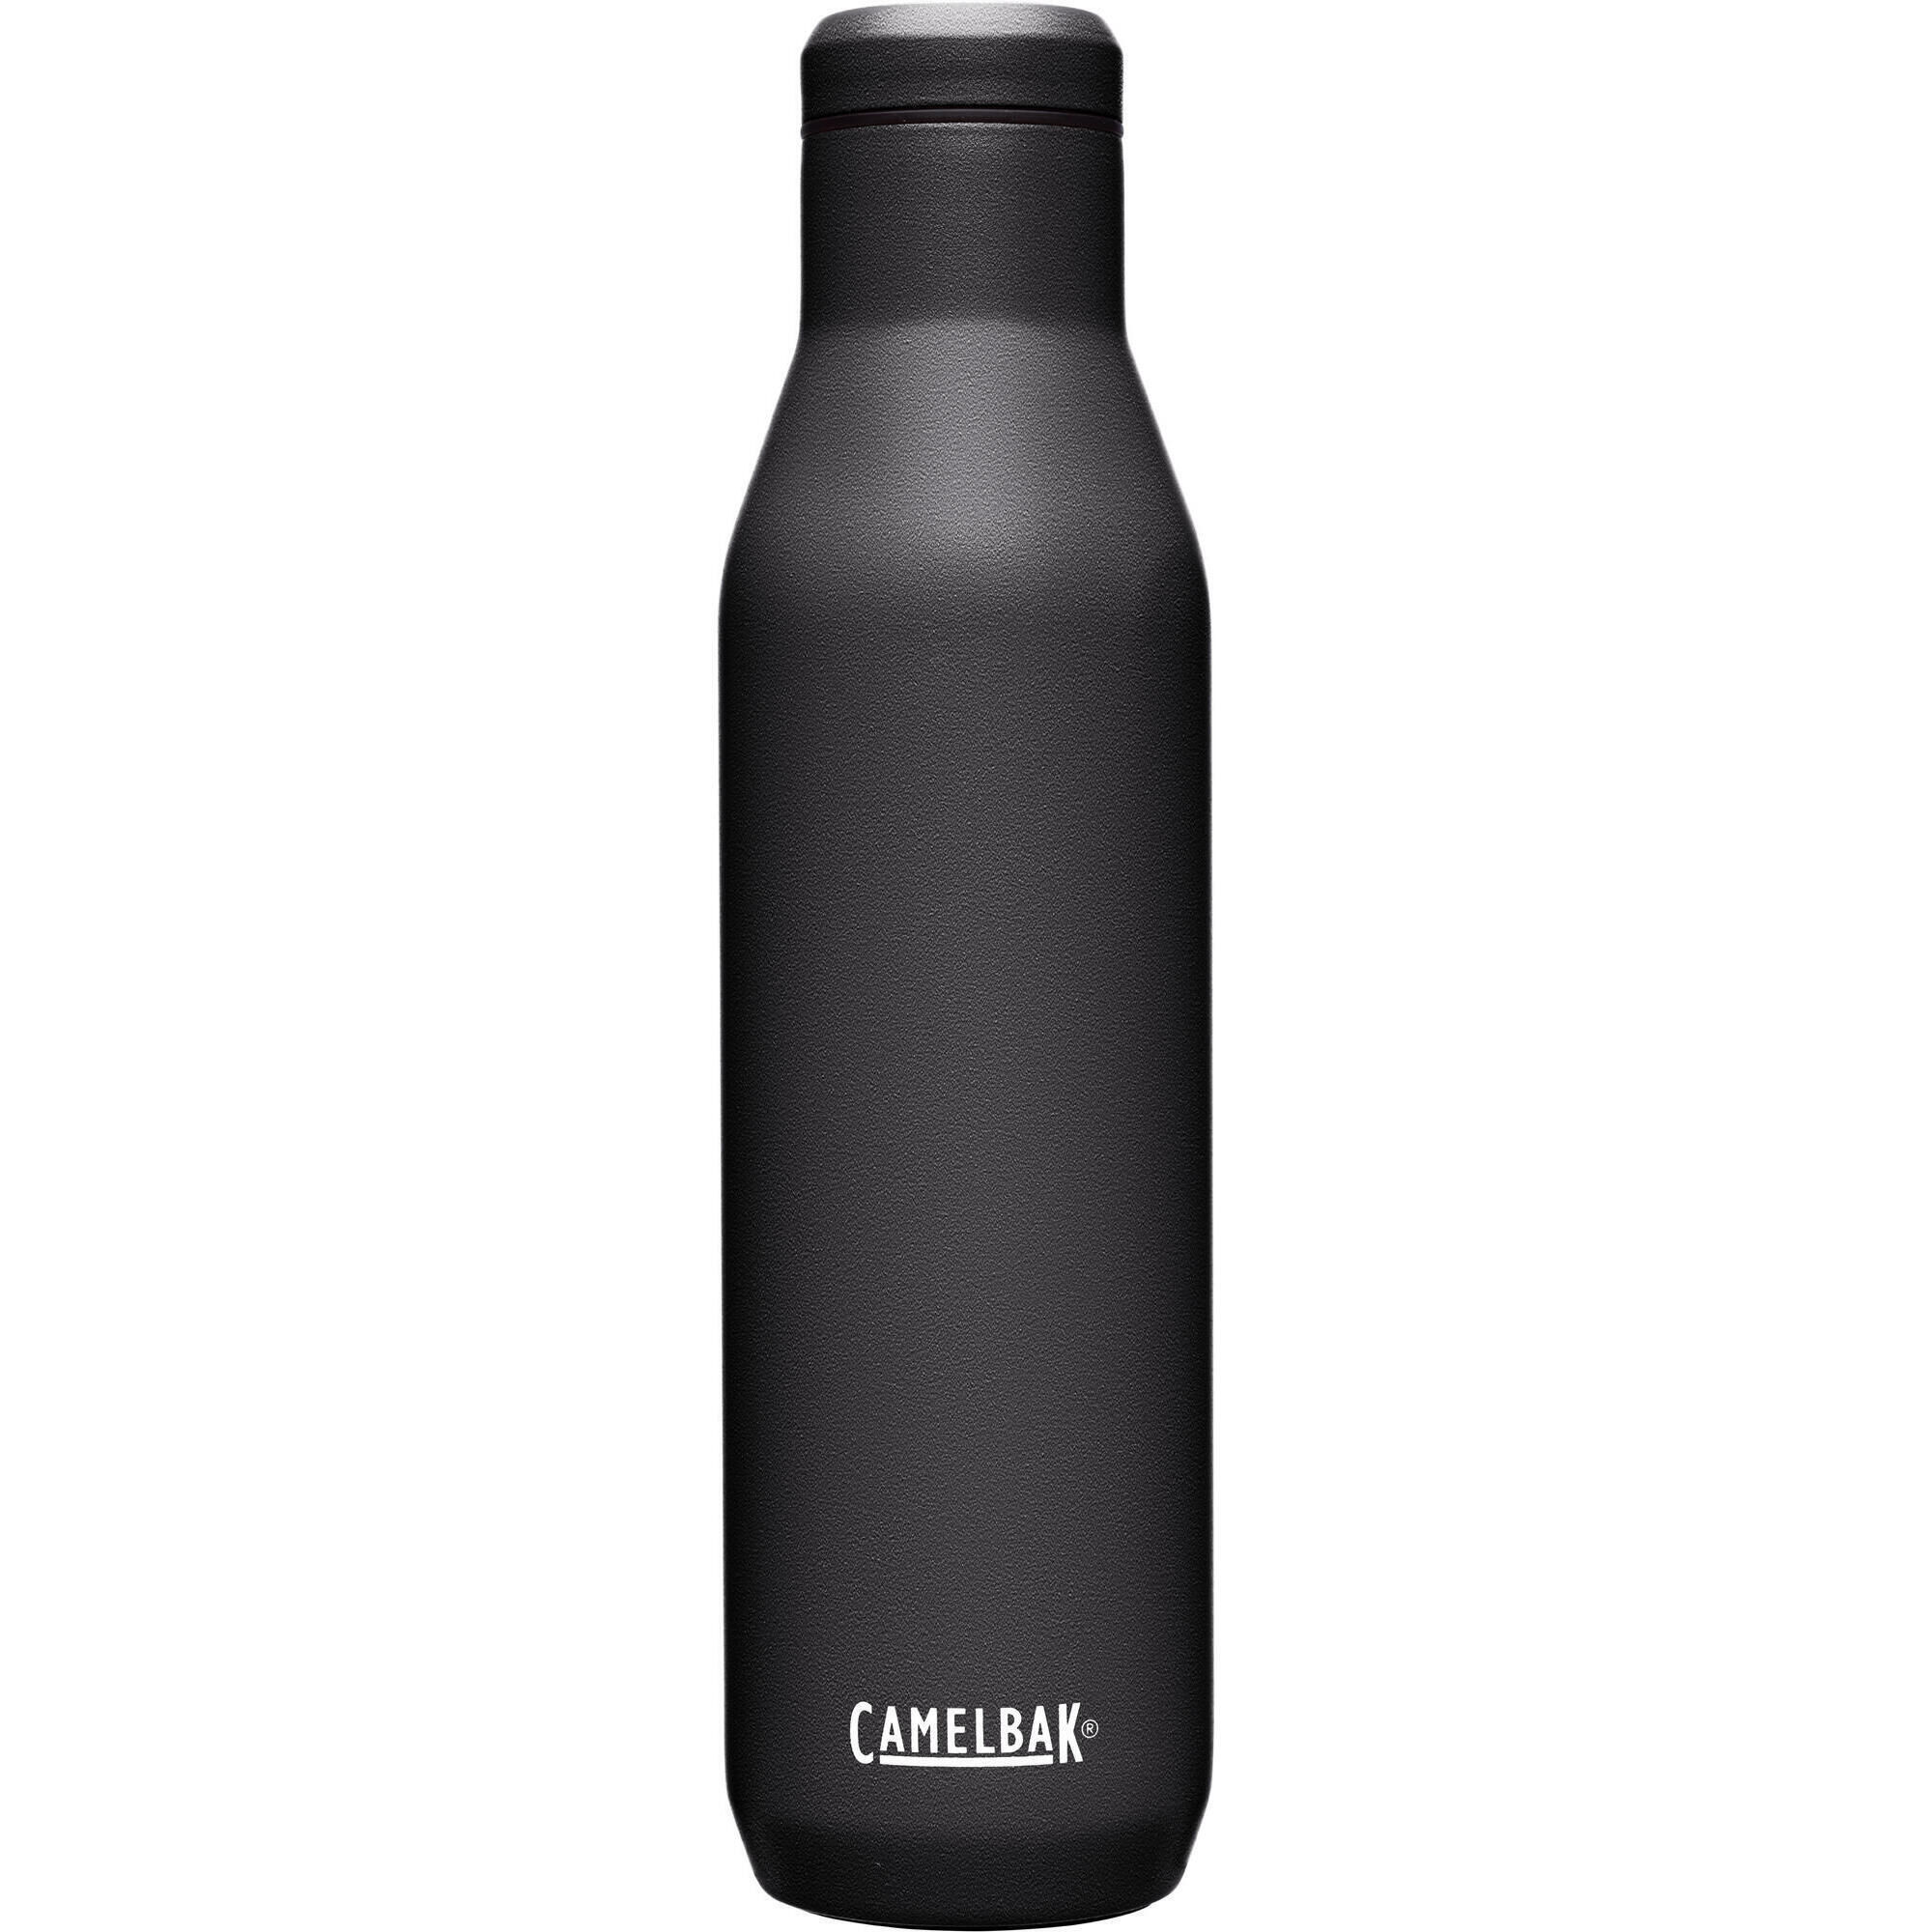 CAMELBAK Horizon Wine Bottle SST Vacuum Insulated